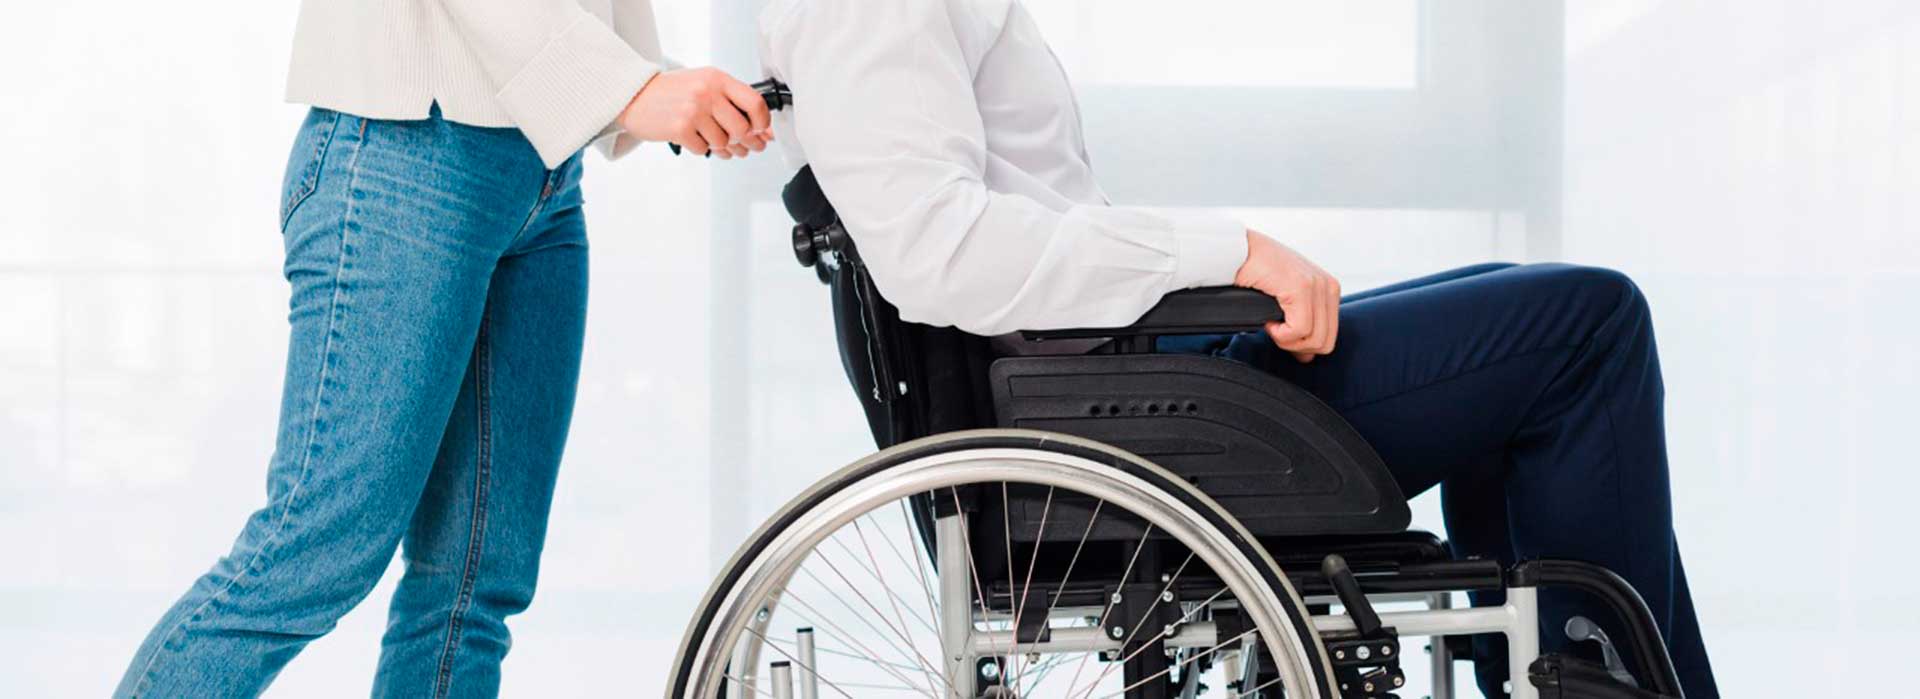 Imagen de persona con movilidad reducida sobre silla de ruedas empujada por cuidador.